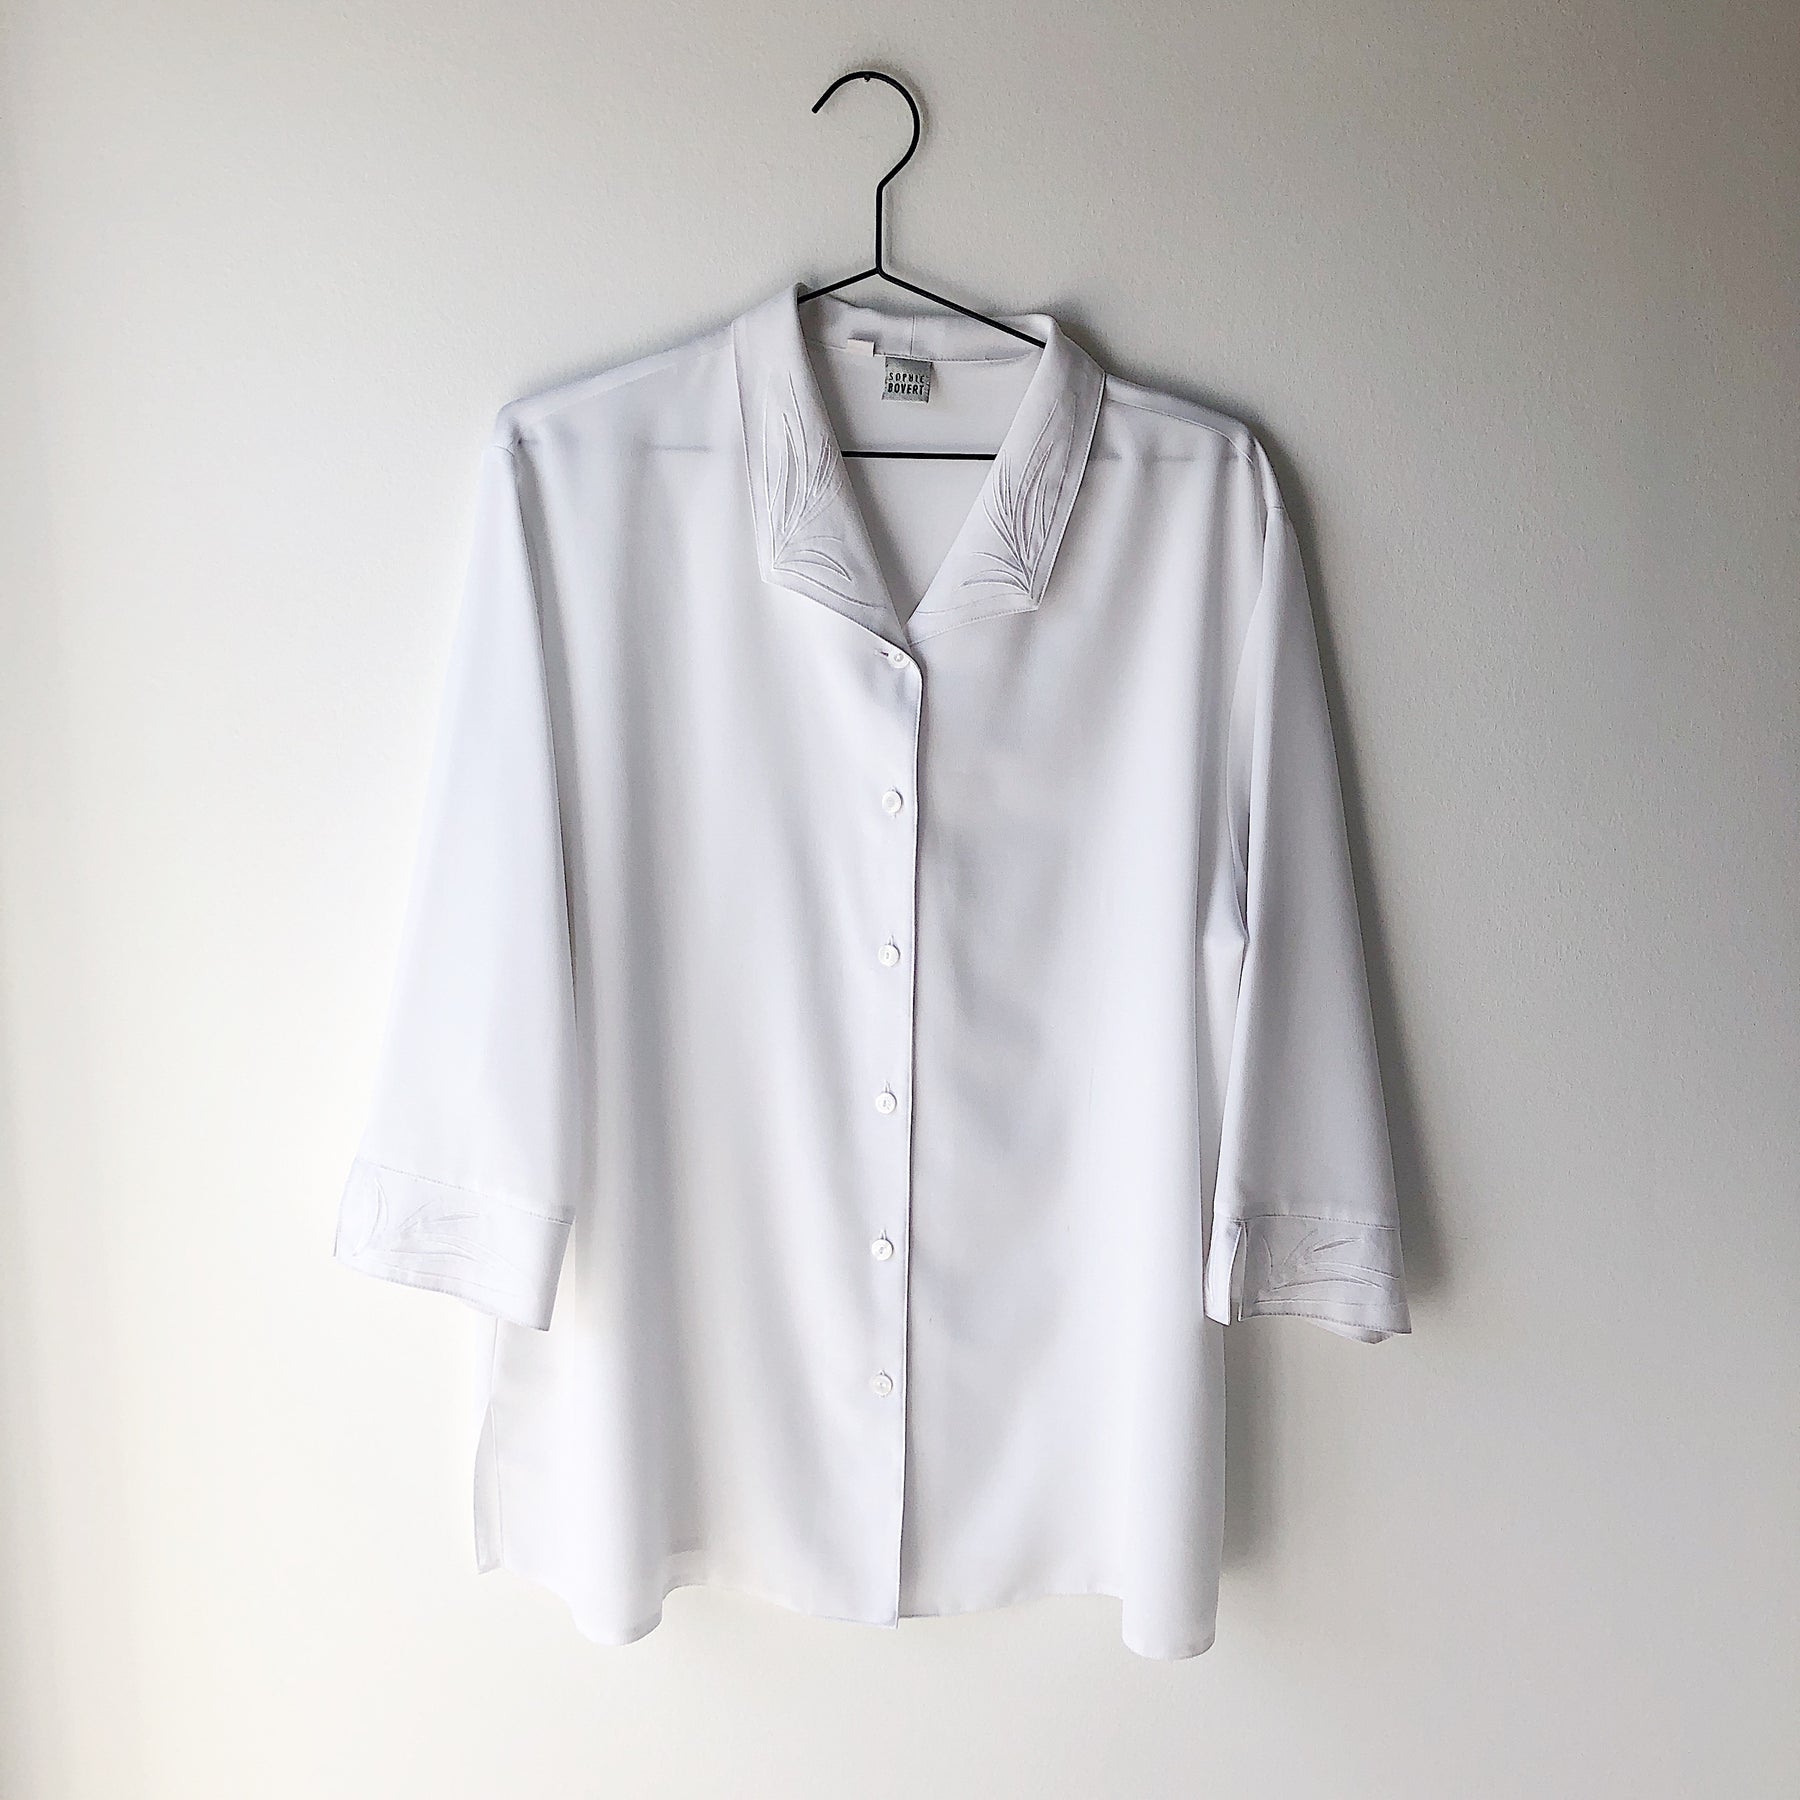 Hvid retro skjorte